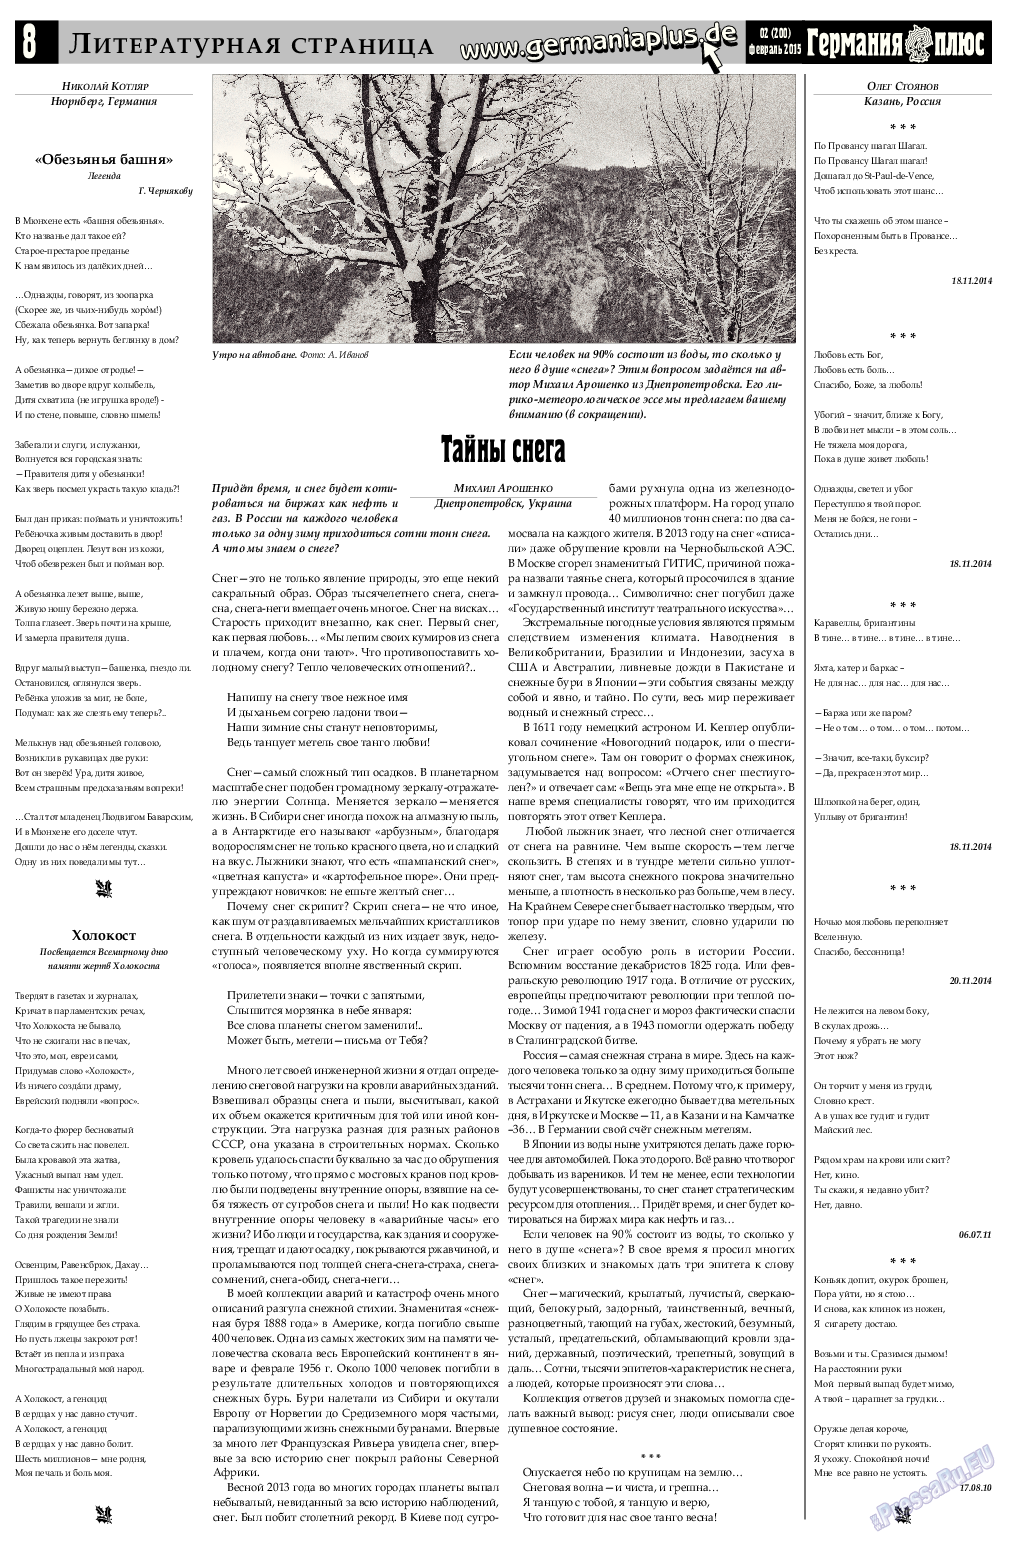 Германия плюс, газета. 2015 №2 стр.8